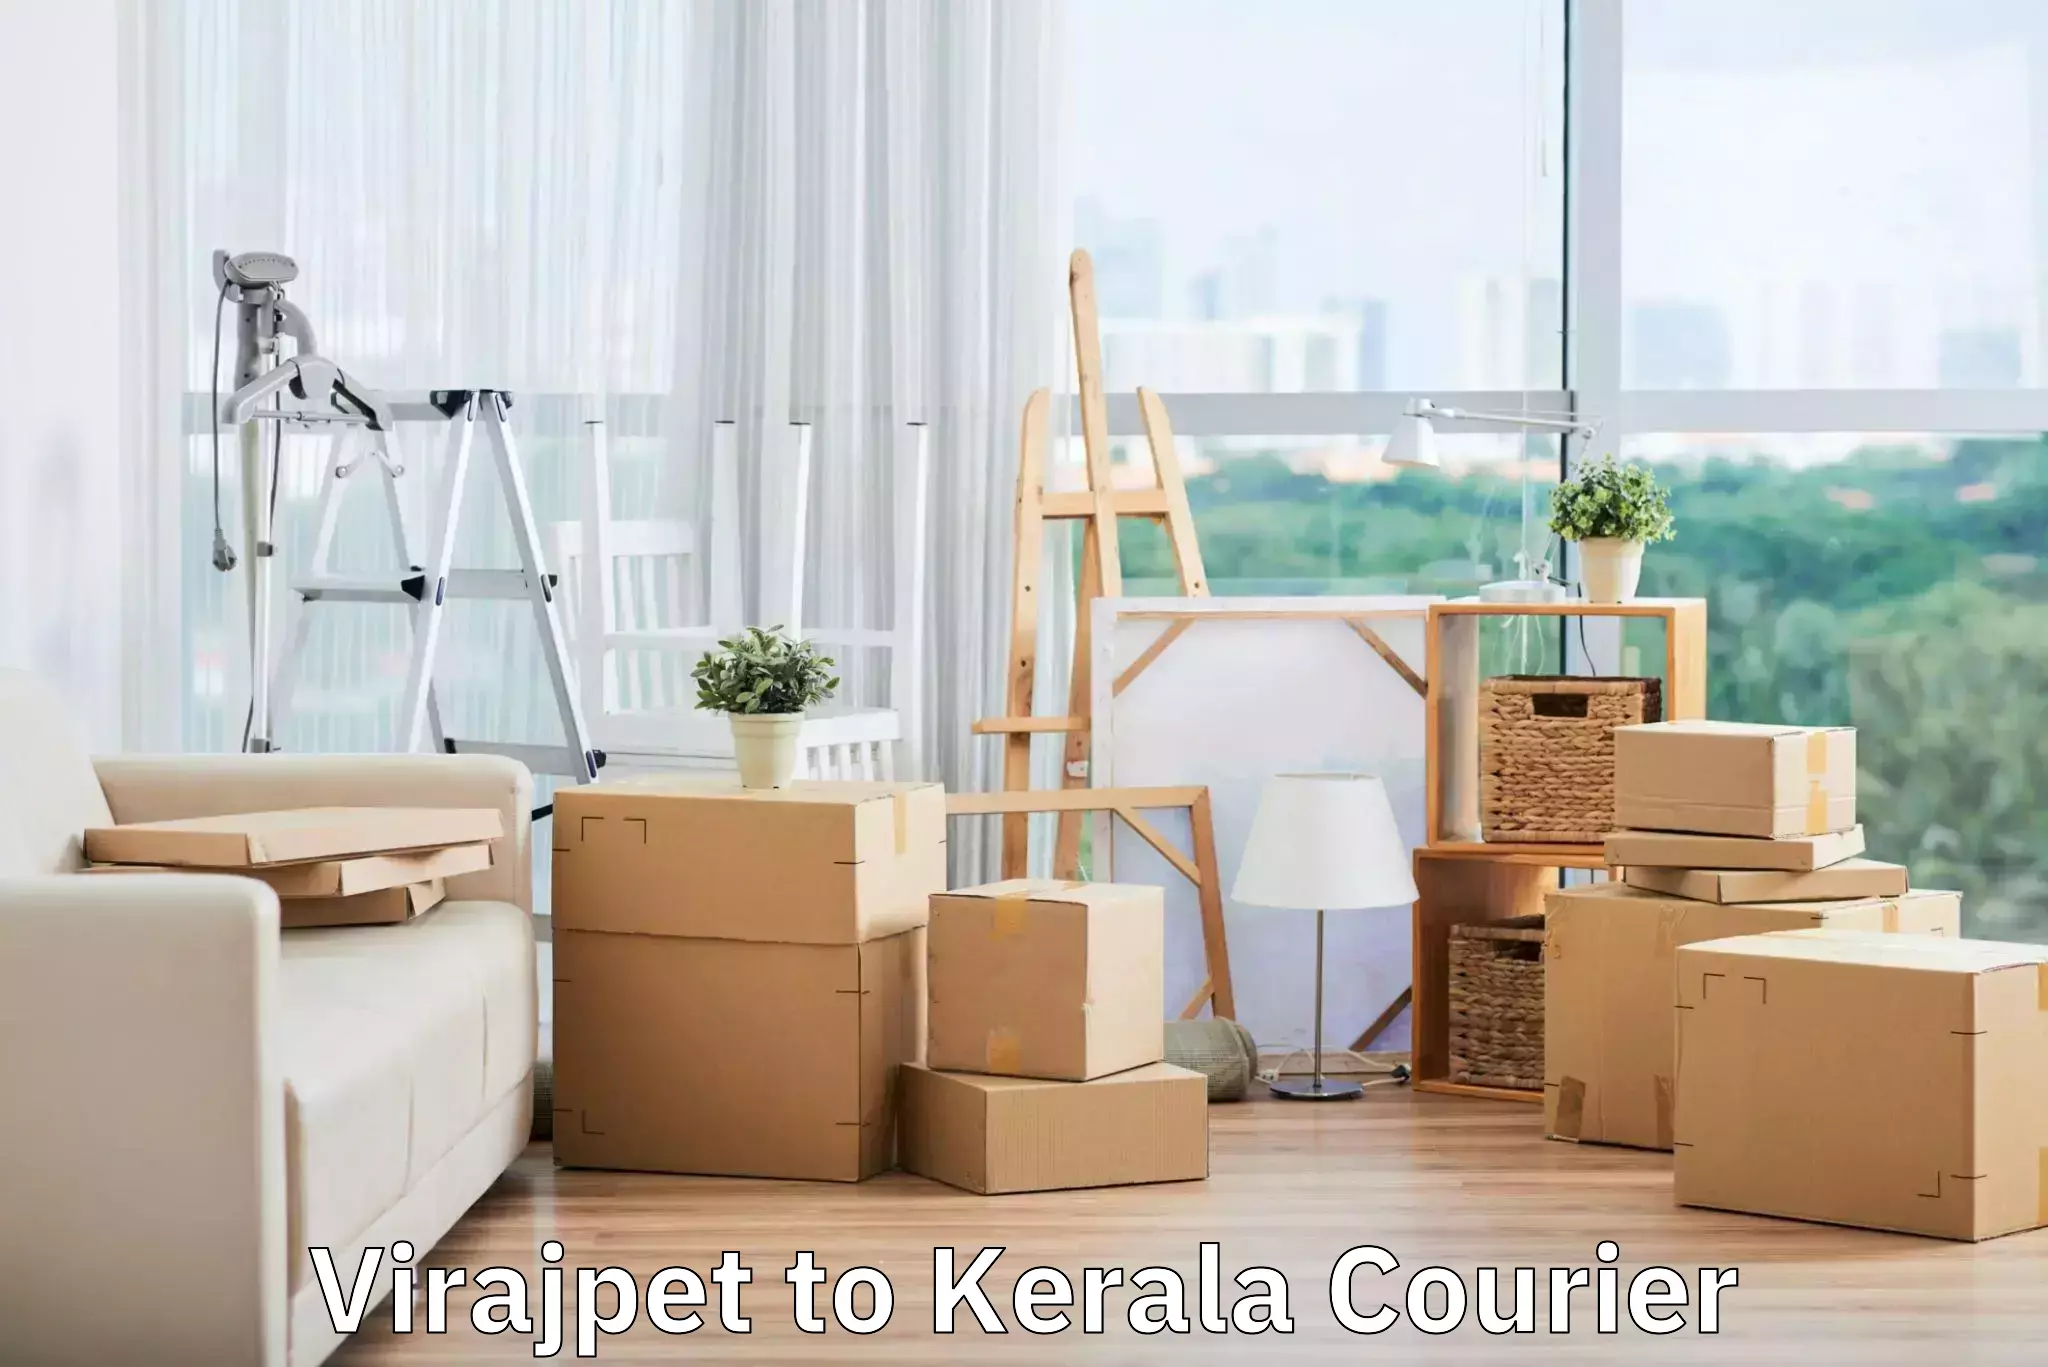 Doorstep luggage pickup Virajpet to Kerala